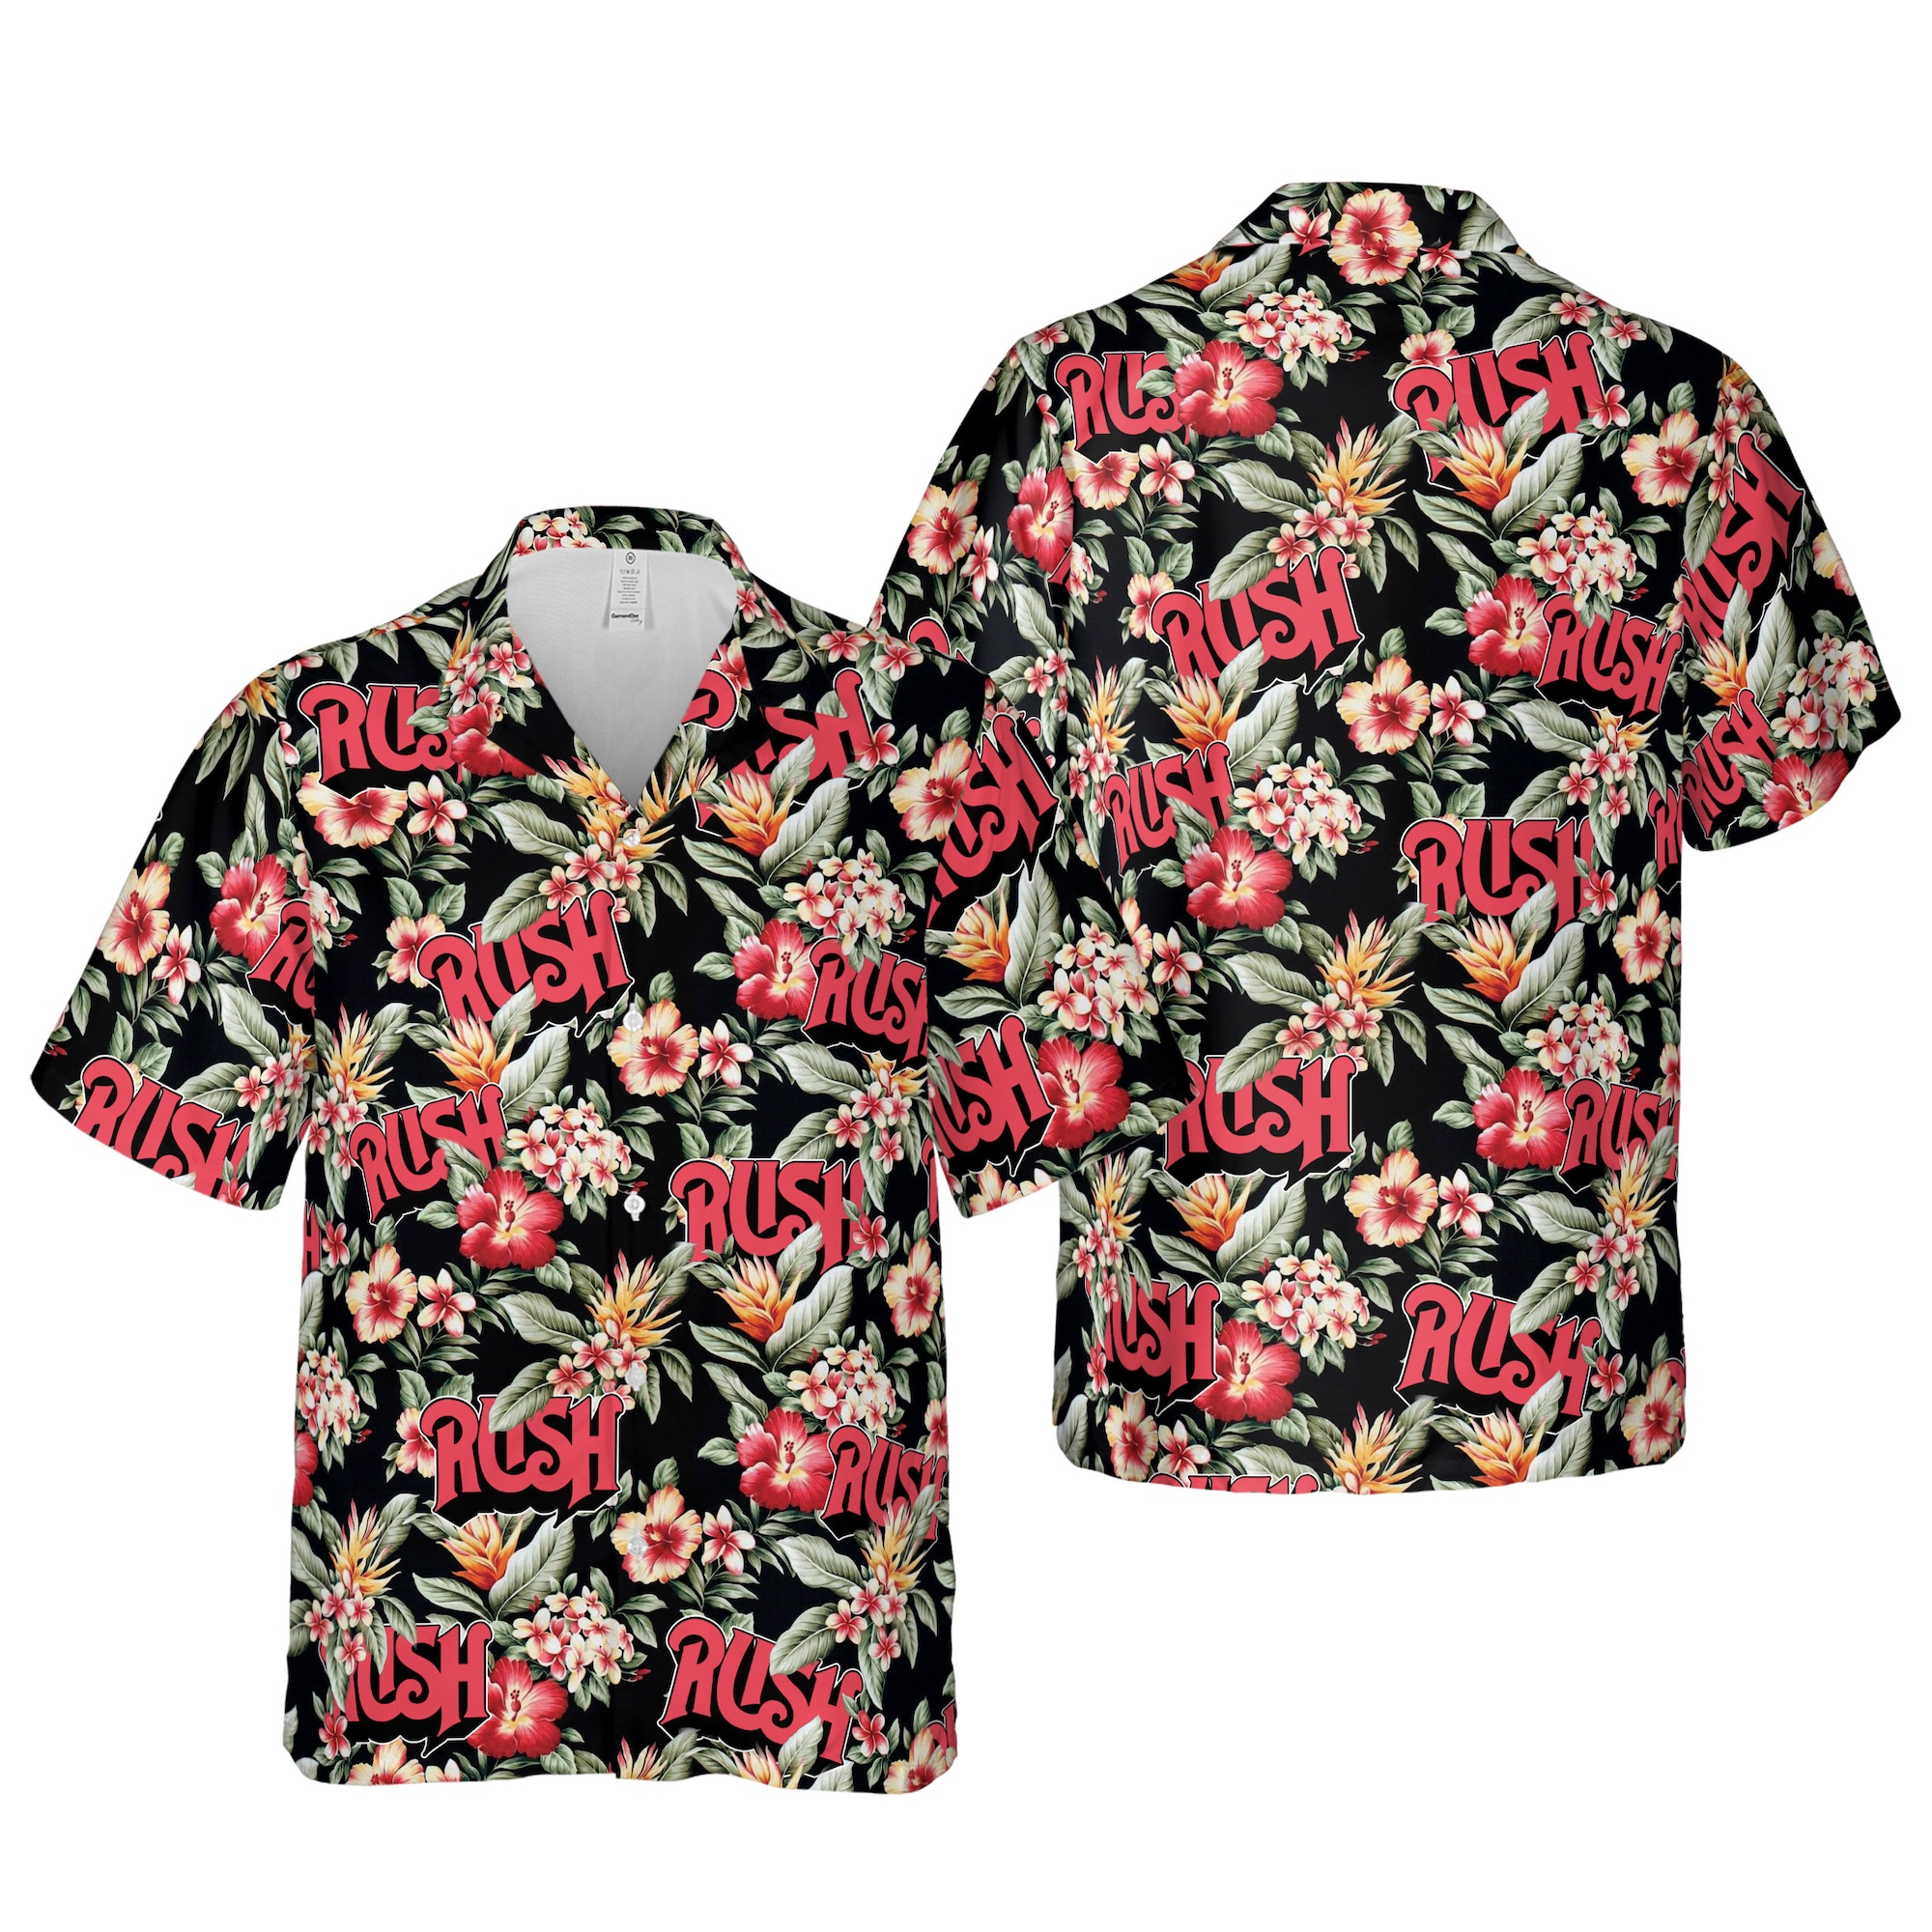 Rush Hawaiian Shirts, Rush Band Button Up  Hawaiian Shirt